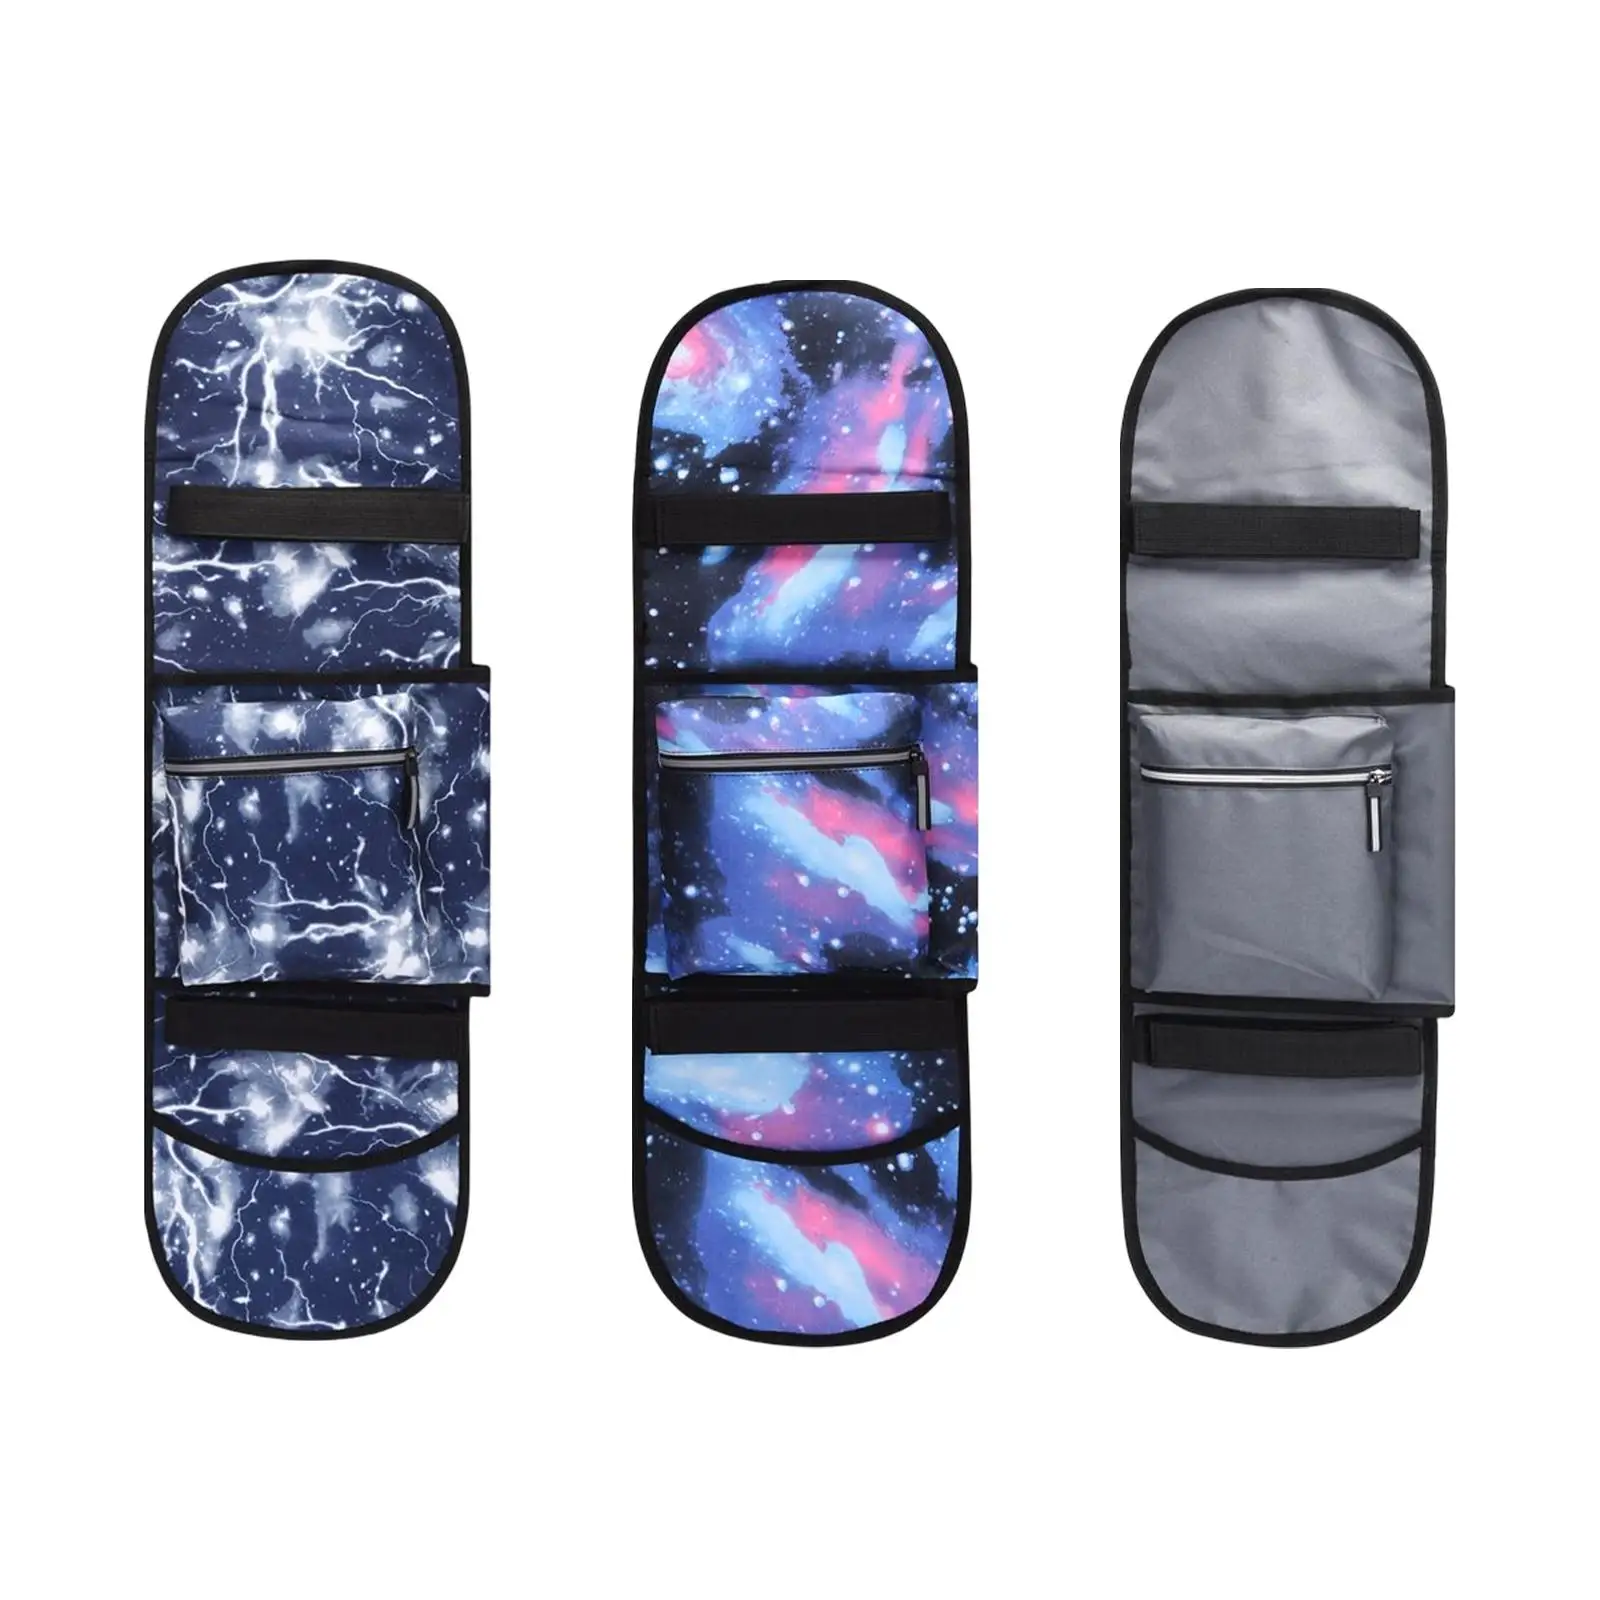 Oxford Cloth Skateboard Bag with Two Adjustable Shoulder Straps Carrier Folding Skateboard Backpacks for Deck Travel Unisex Kids